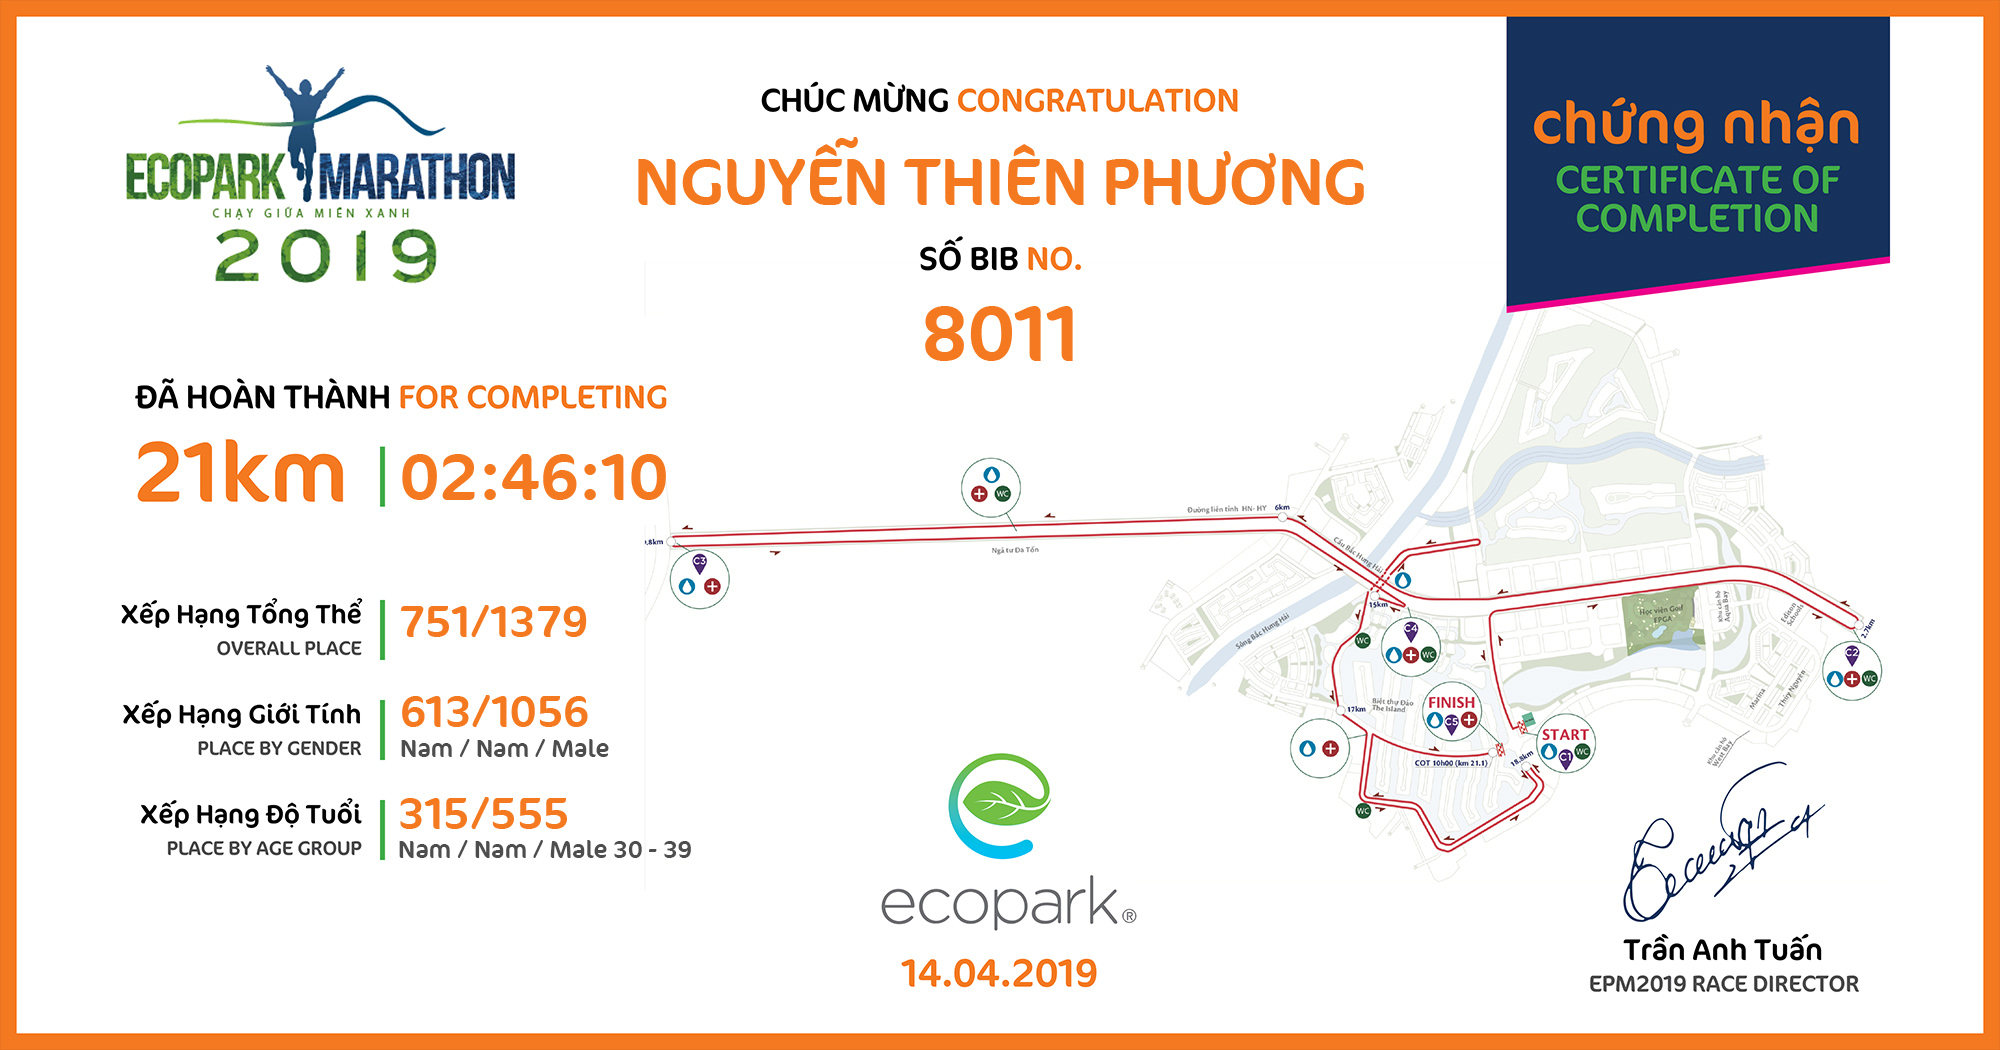 8011 - Nguyễn Thiên Phương